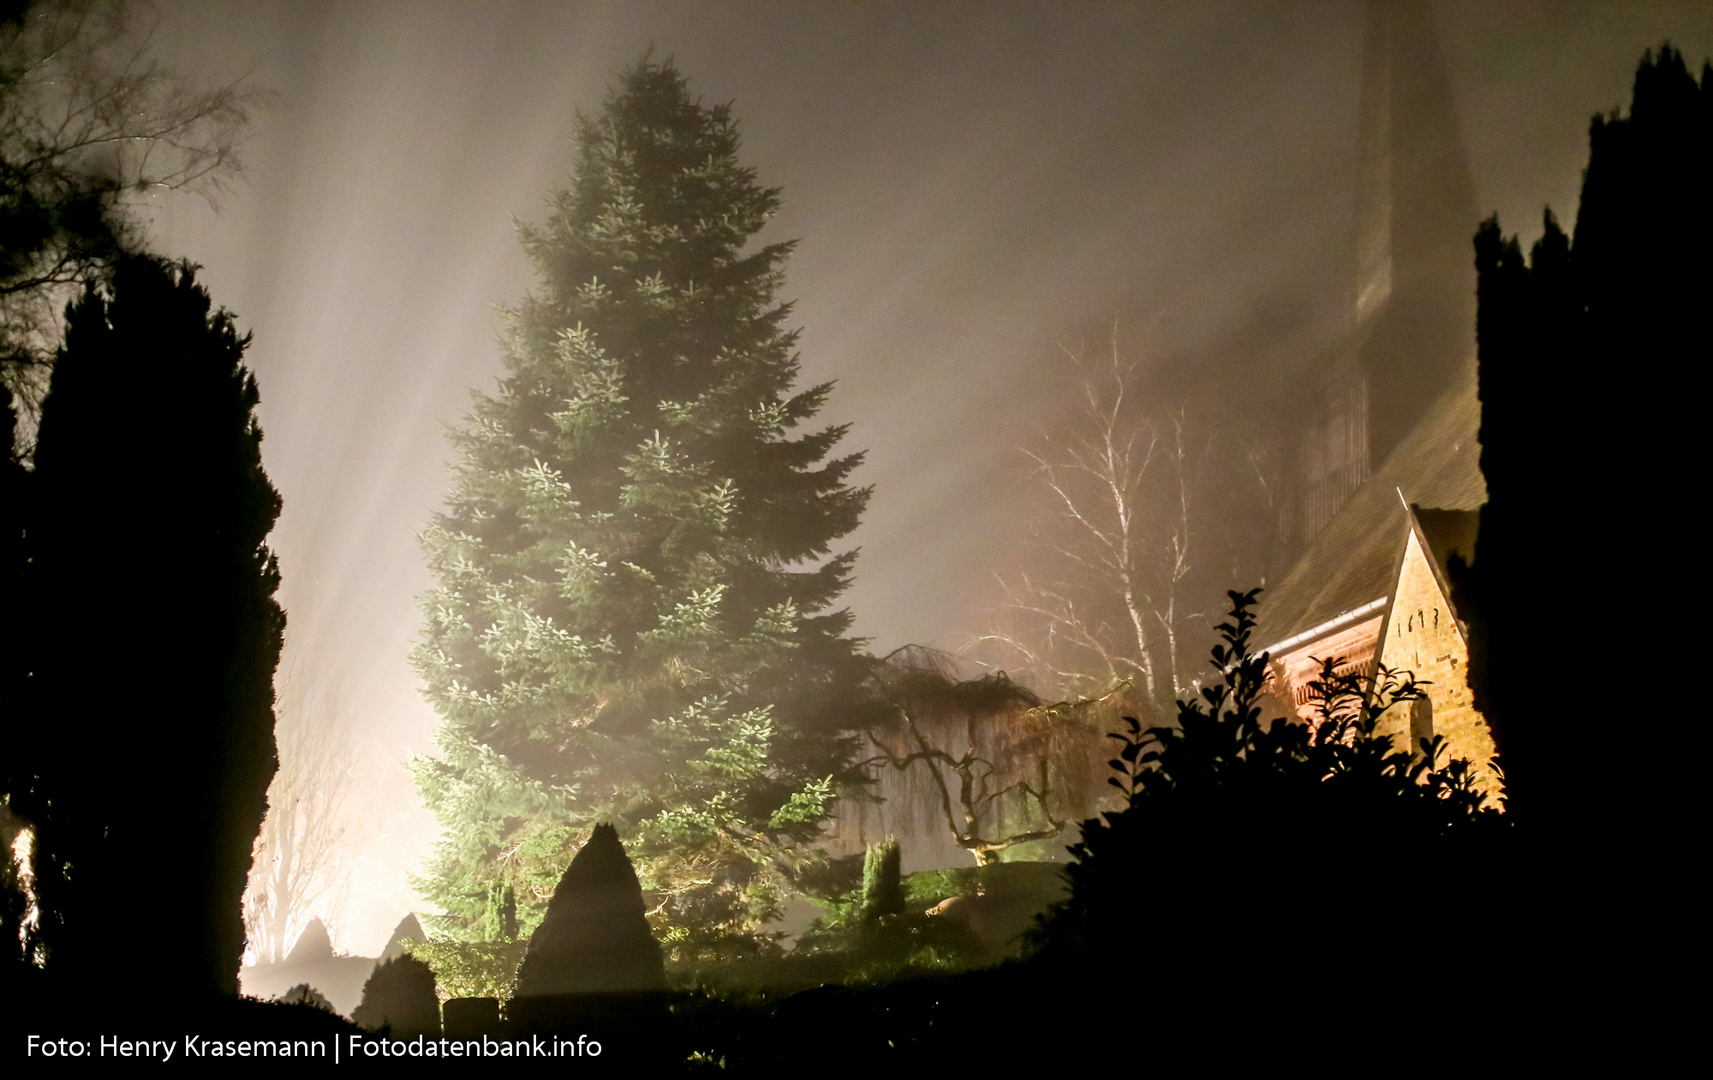 Kirche von Rieseby im Nebel angestrahlt